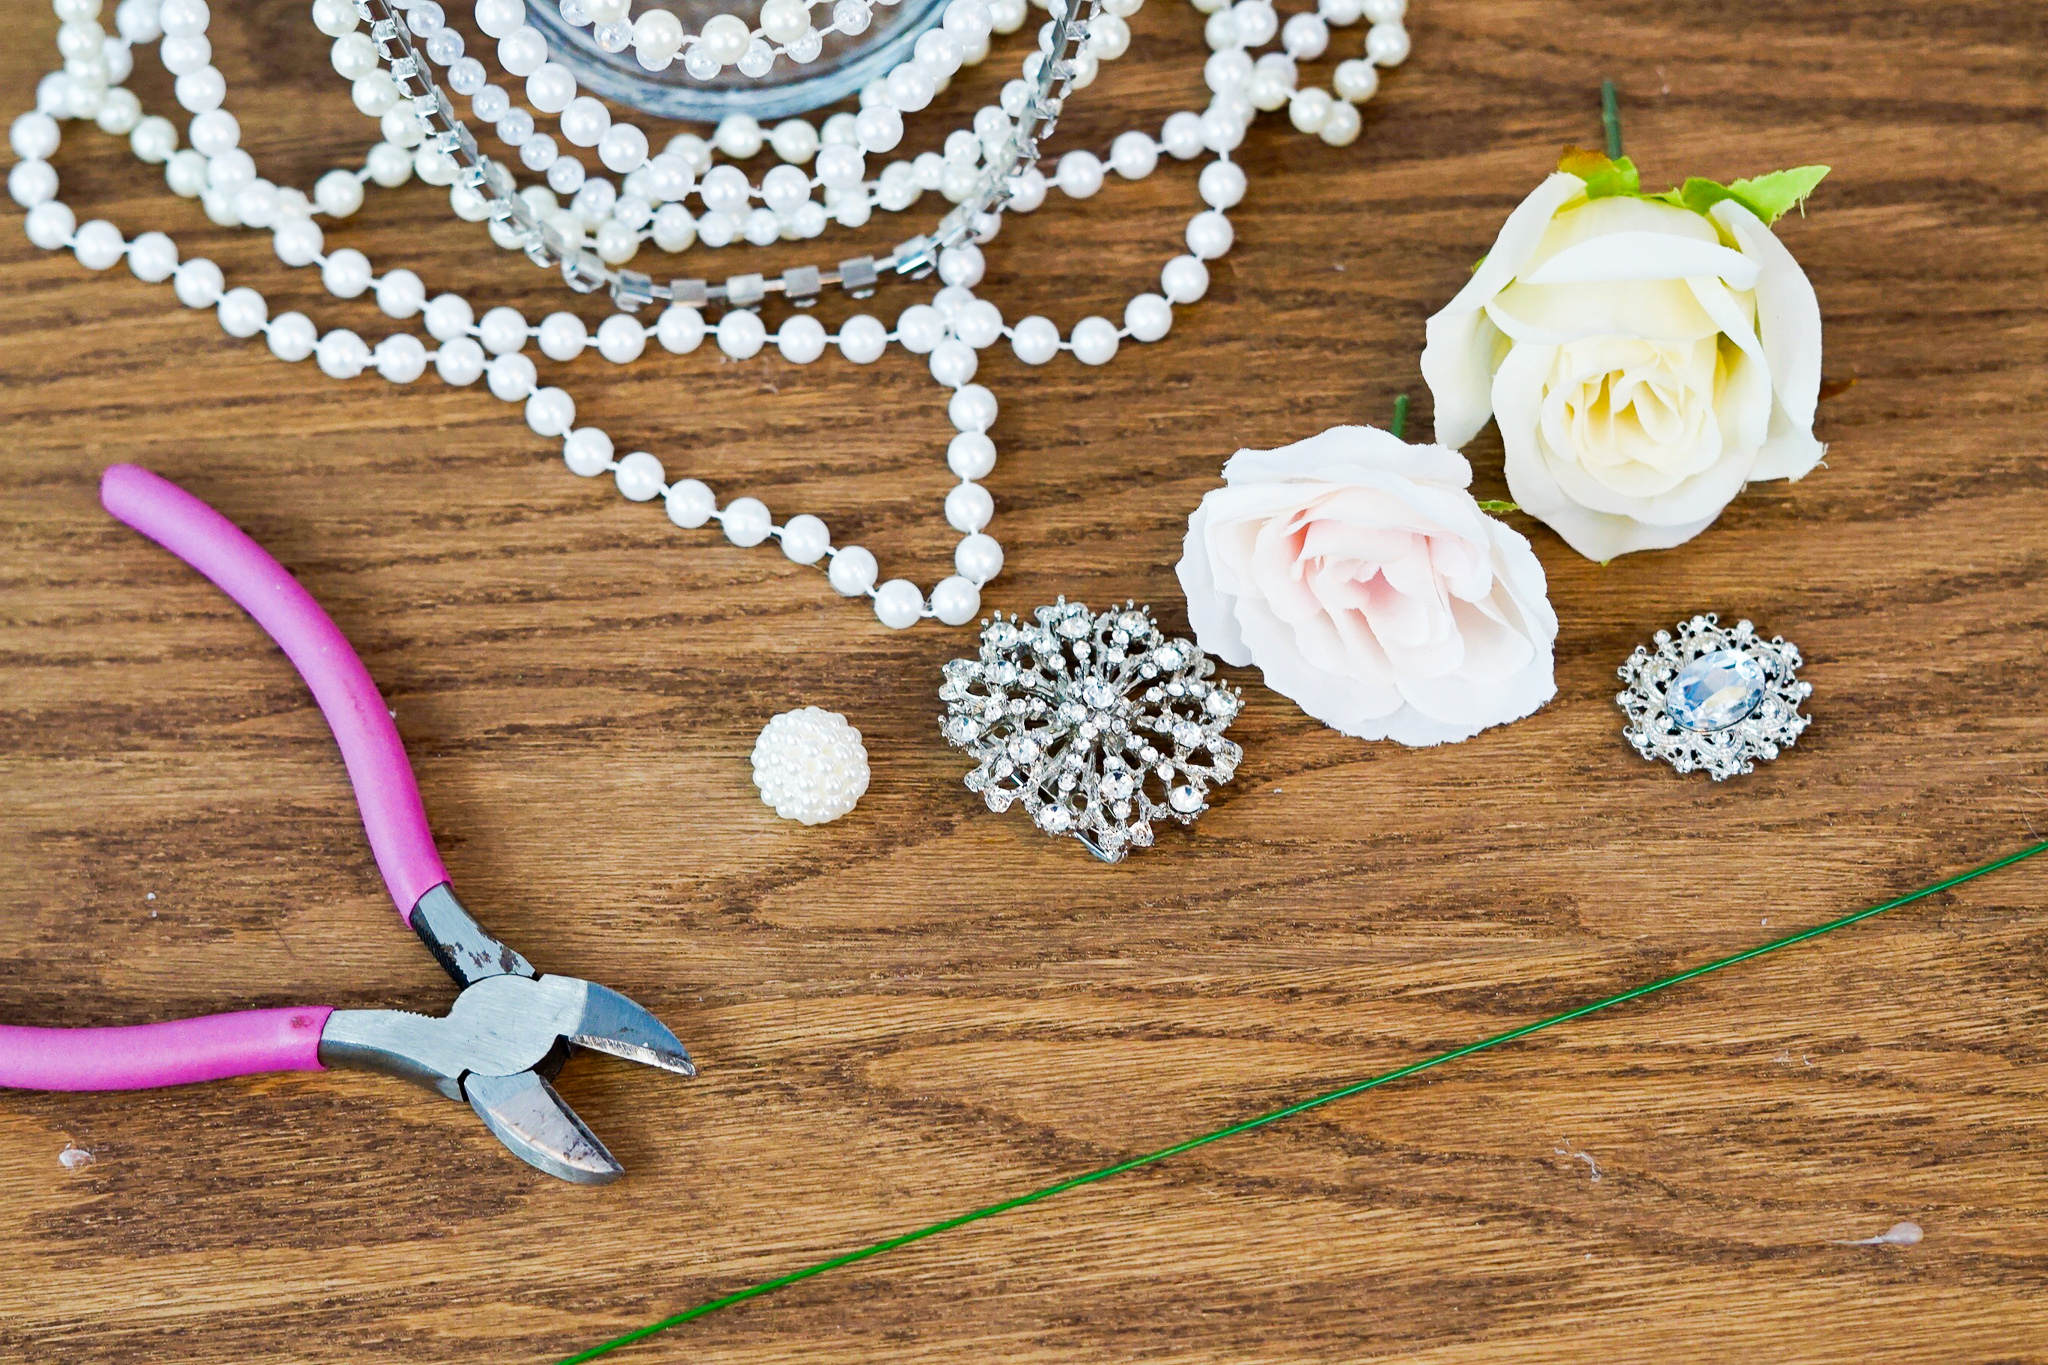 DIY Elegant Brooch and Pearl Cascading Bridal Bouquet